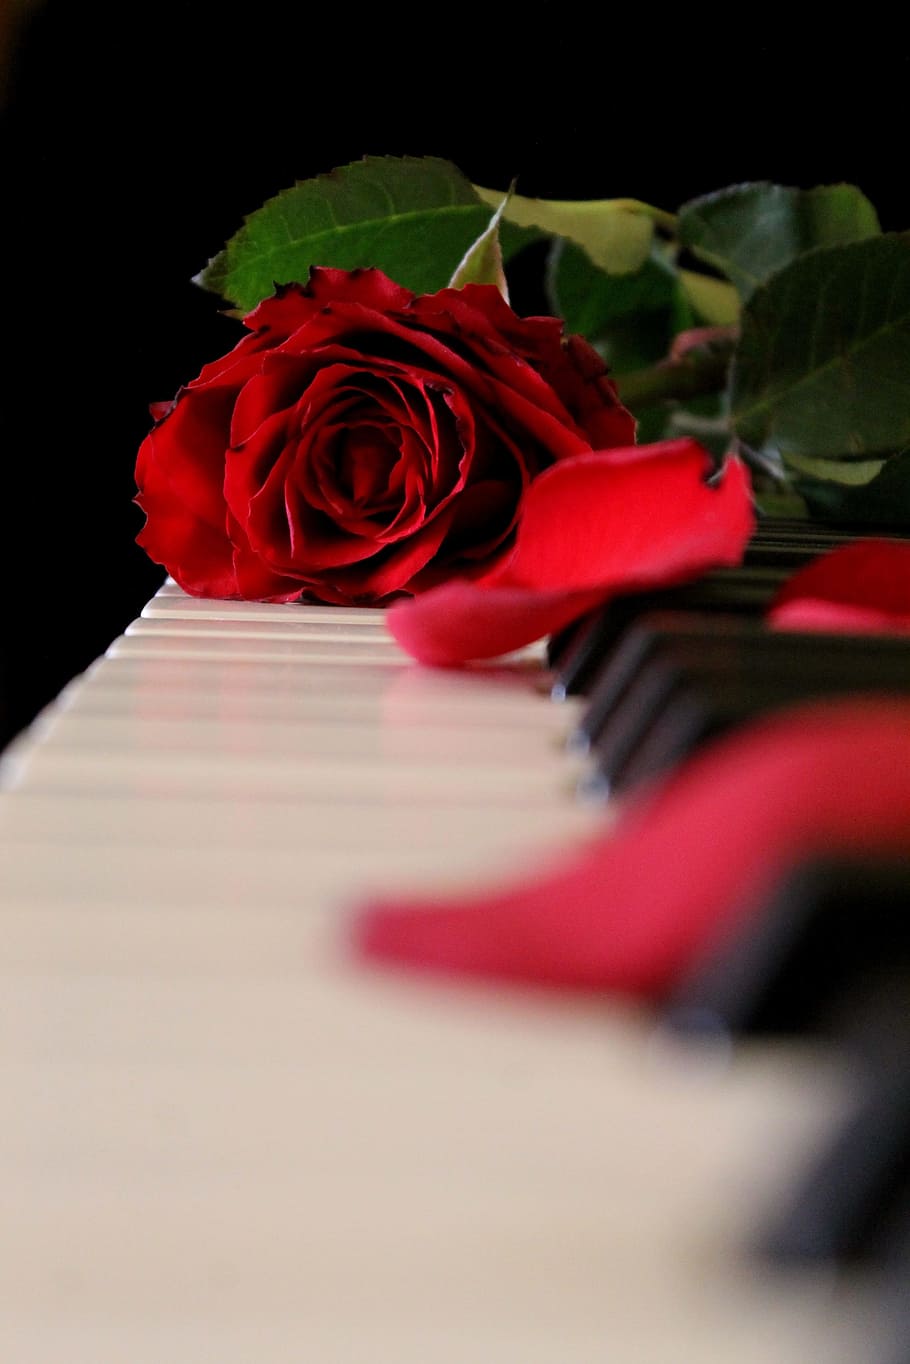 rojo, rosa, teclado de piano, piano, música, flor, planta floreciendo, belleza en la naturaleza, rosa - flor, pétalo